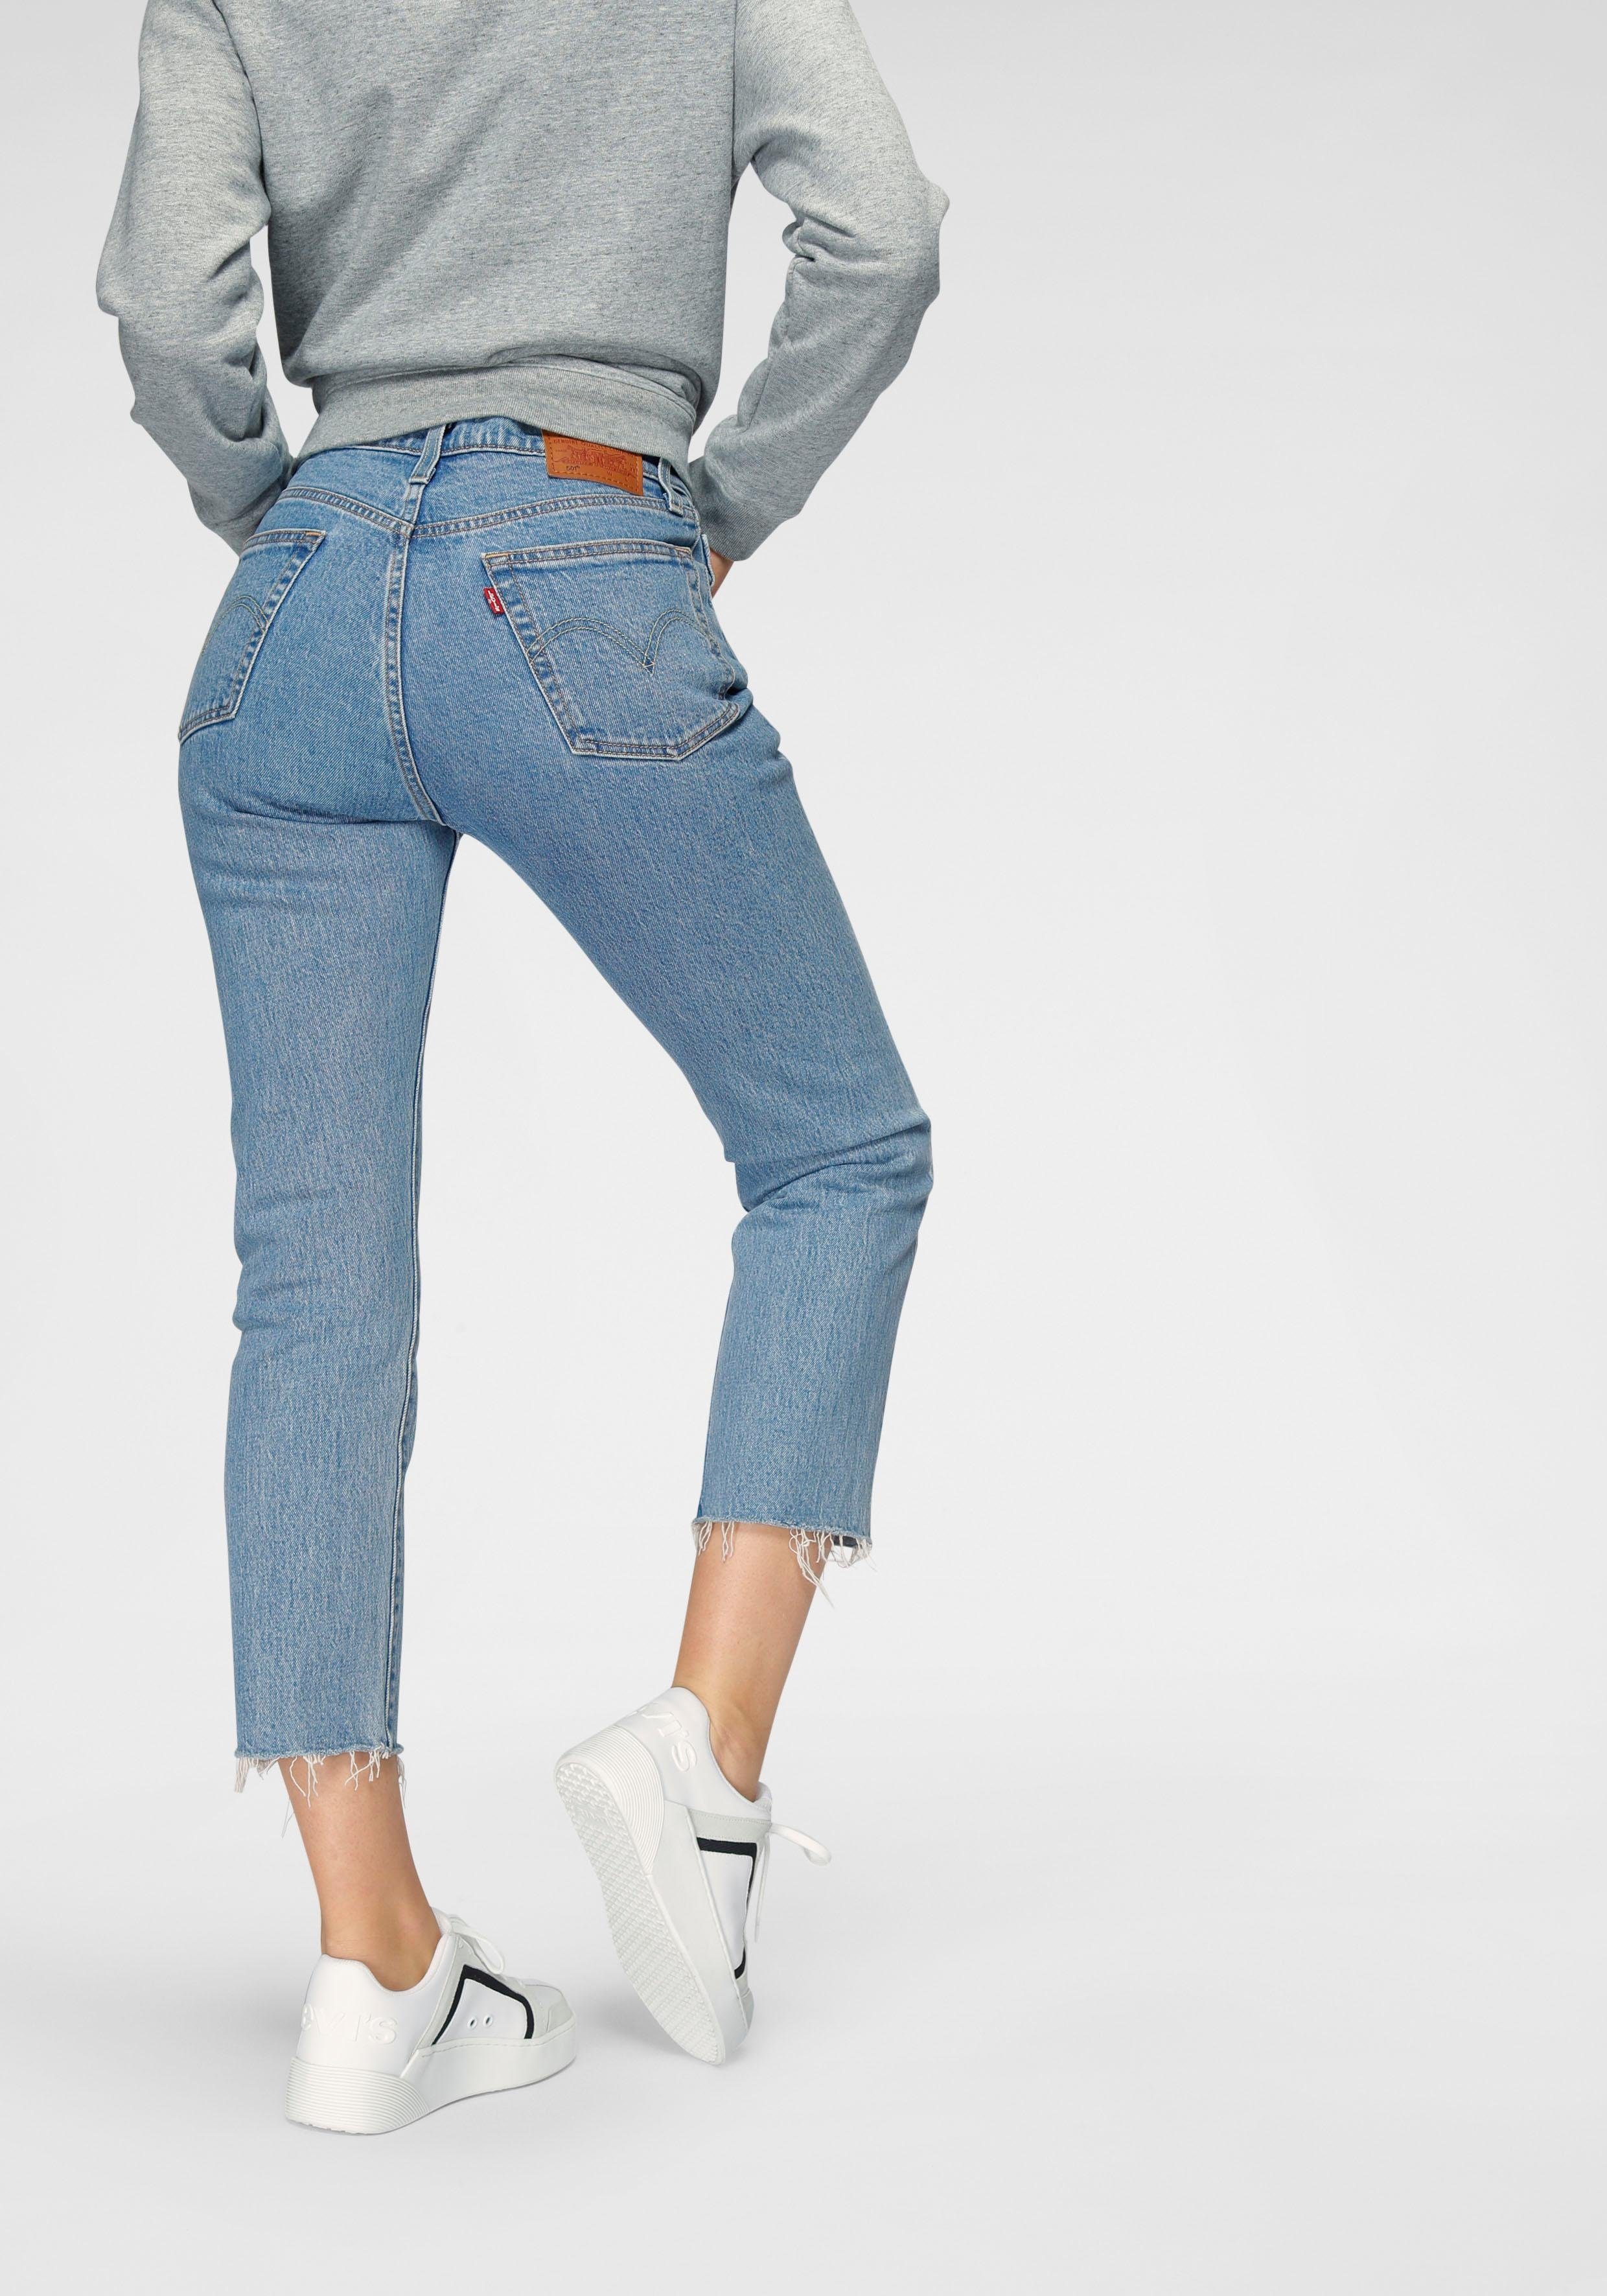 levis jeans nl